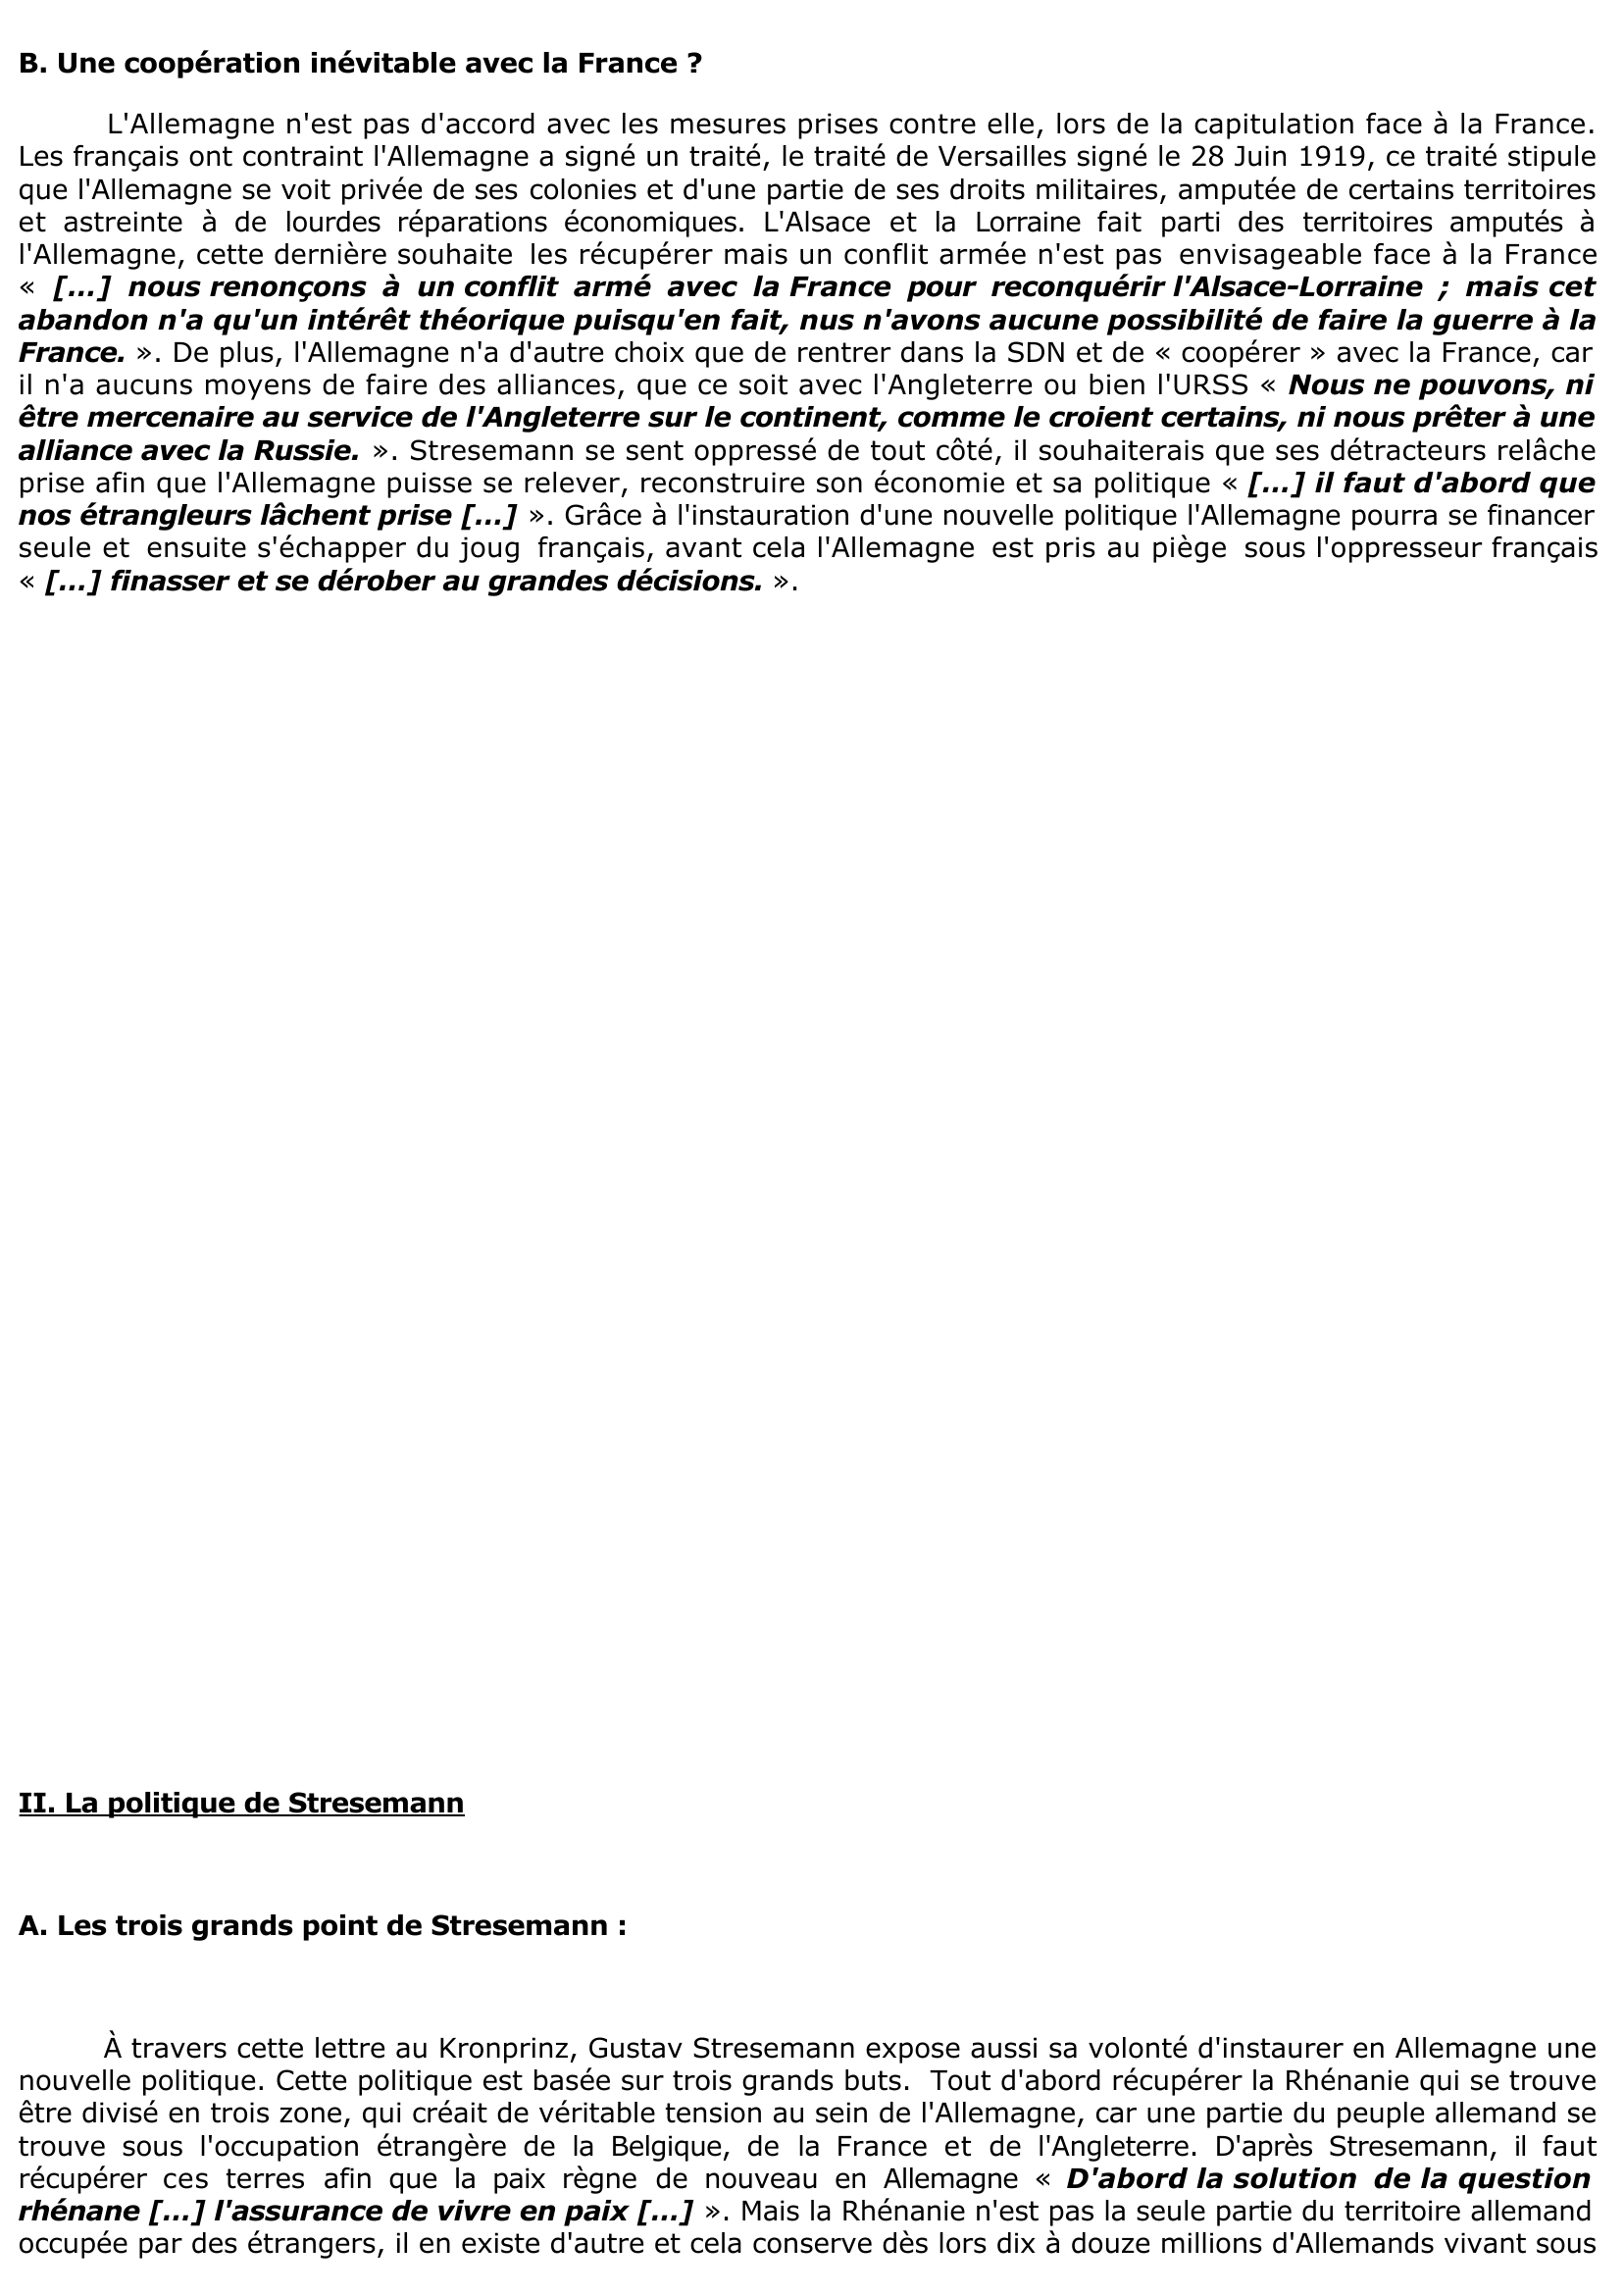 Prévisualisation du document LETTRE DE GUSTAV STRESEMANN AU KRONPRINZ, 7 SEPTEMBRE 1925 (Histoire)